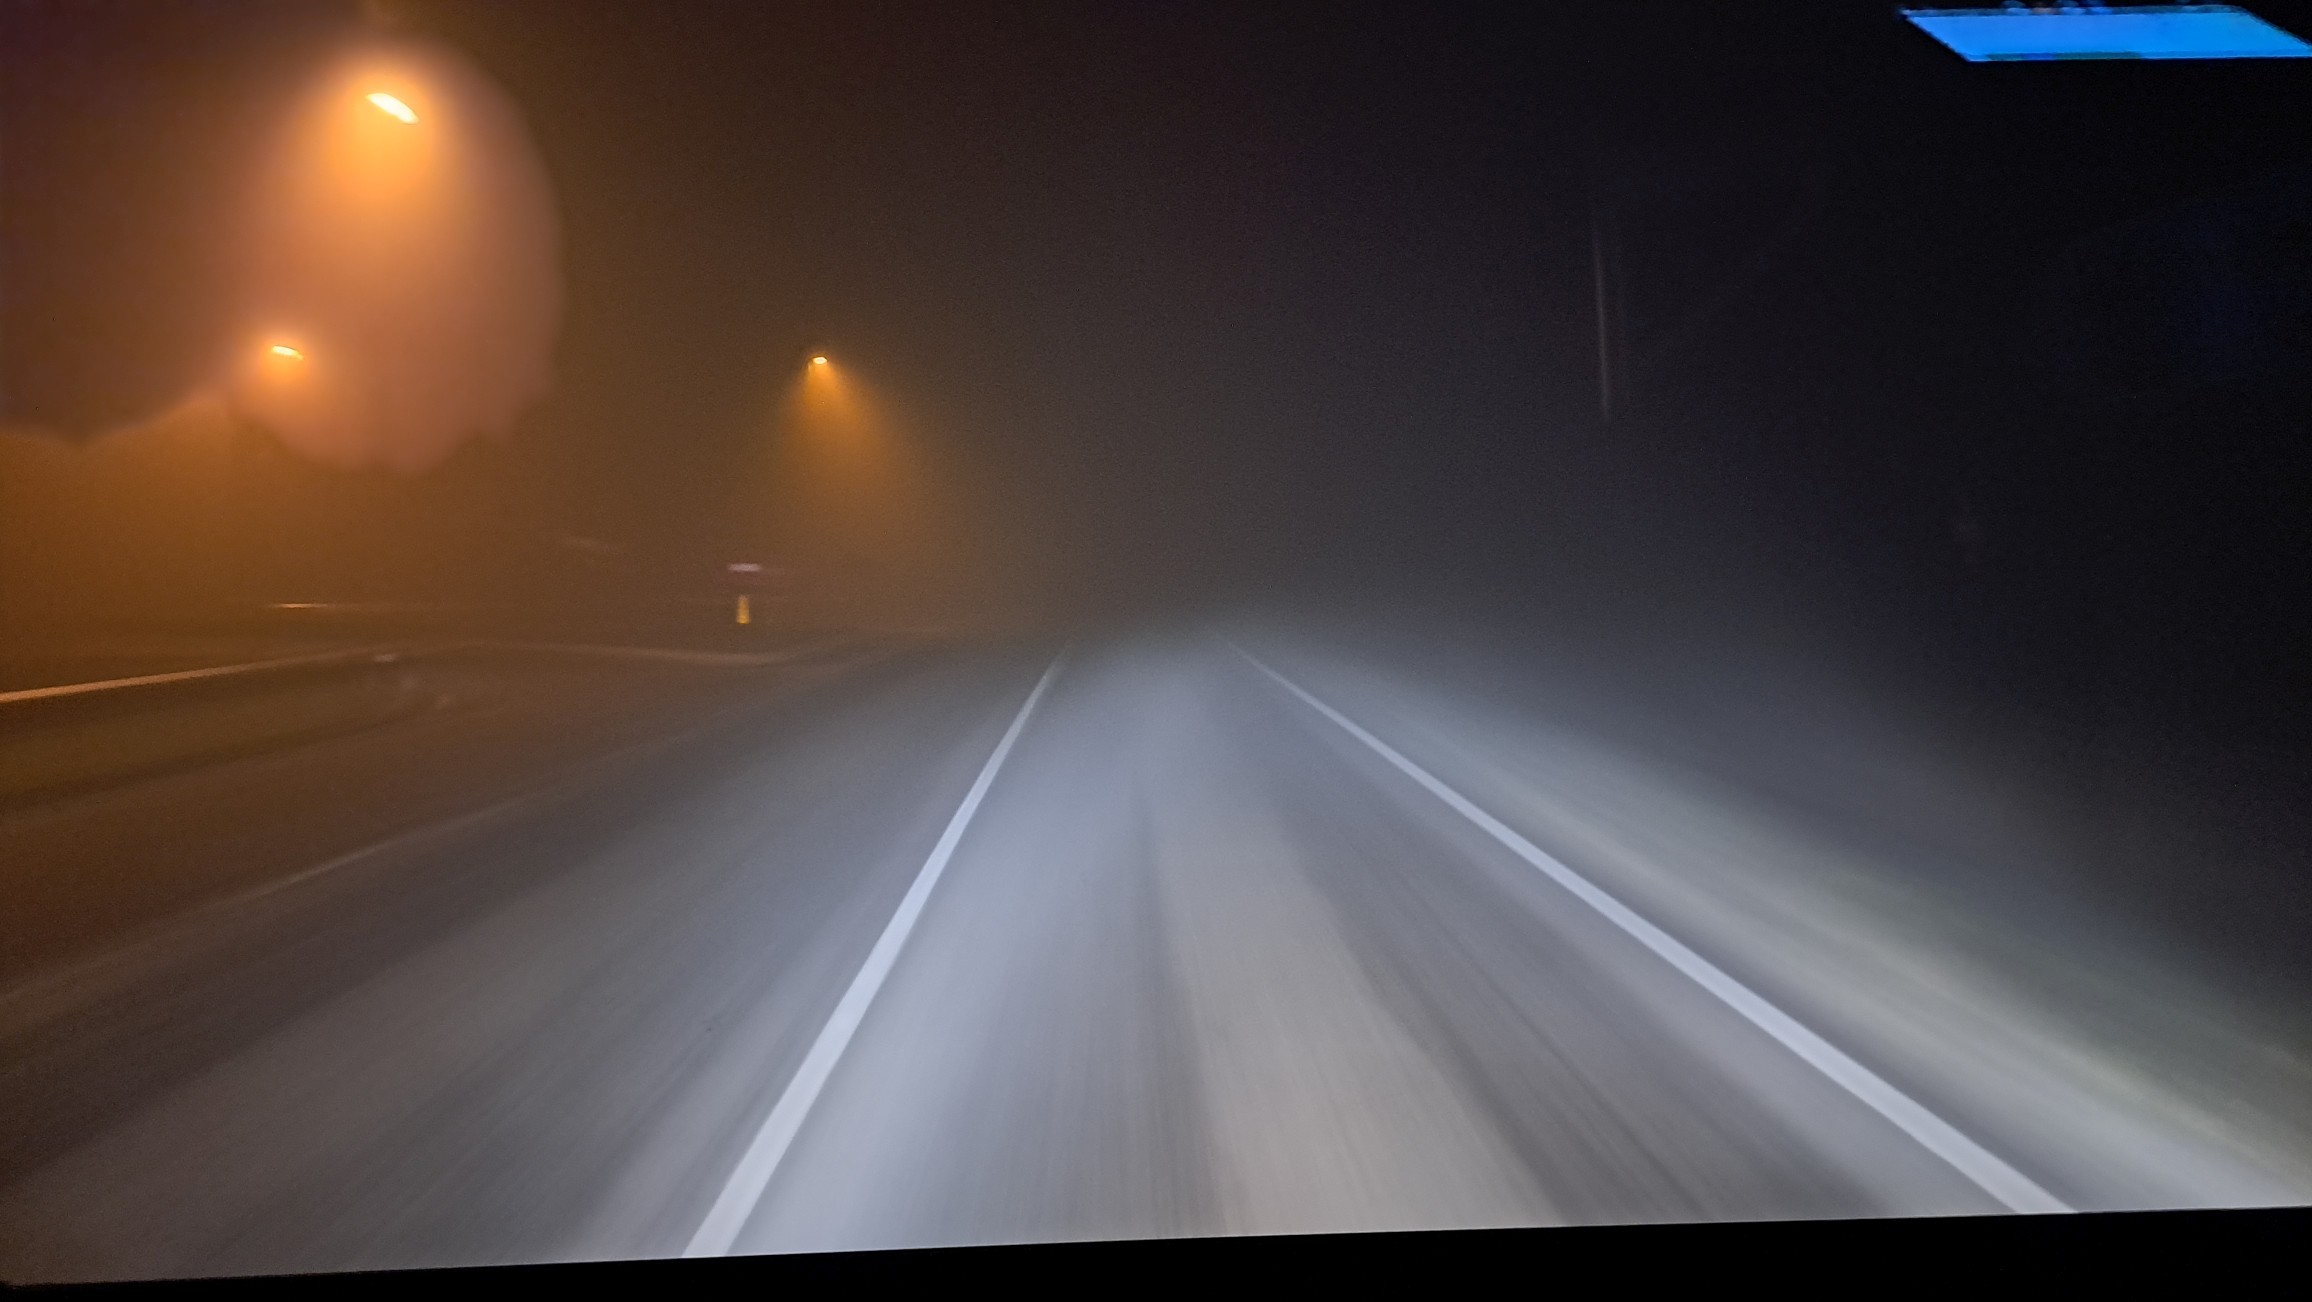 Bild von der Straße im Nebel